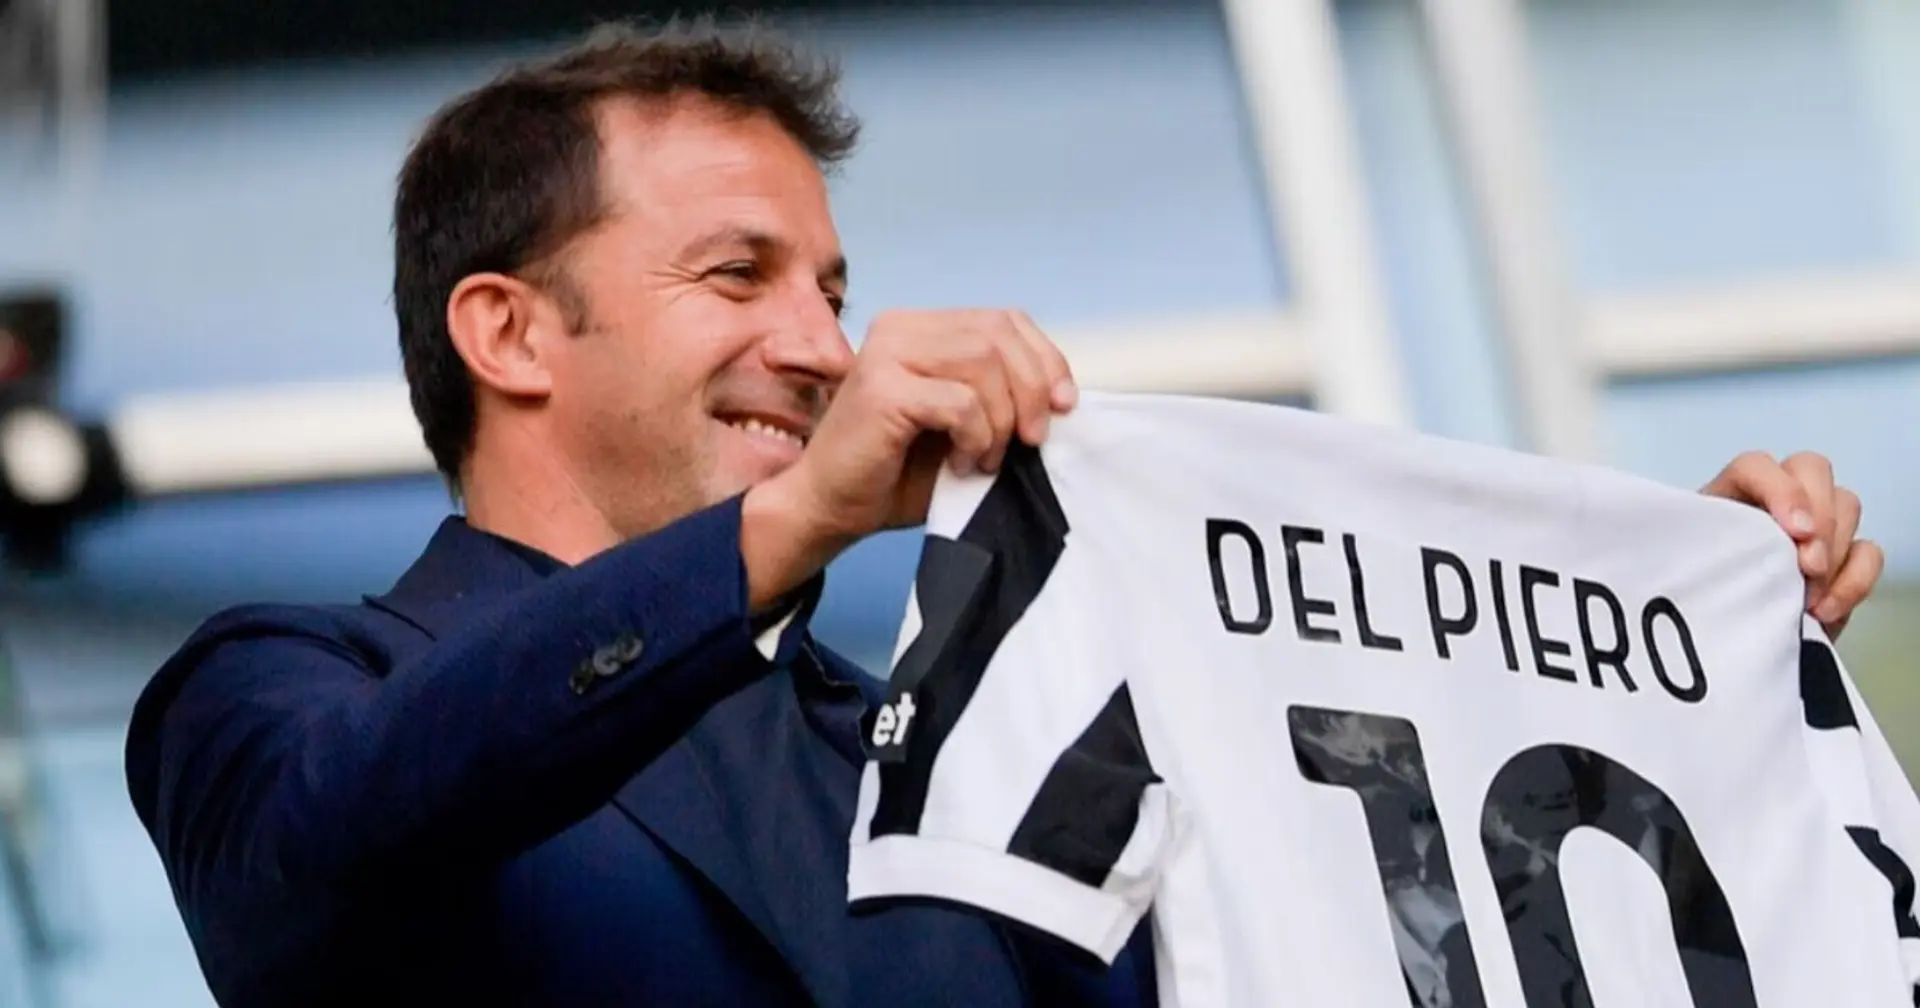 Del Piero torna alla Juventus? Le parole della leggenda bianconera fanno ben sperare